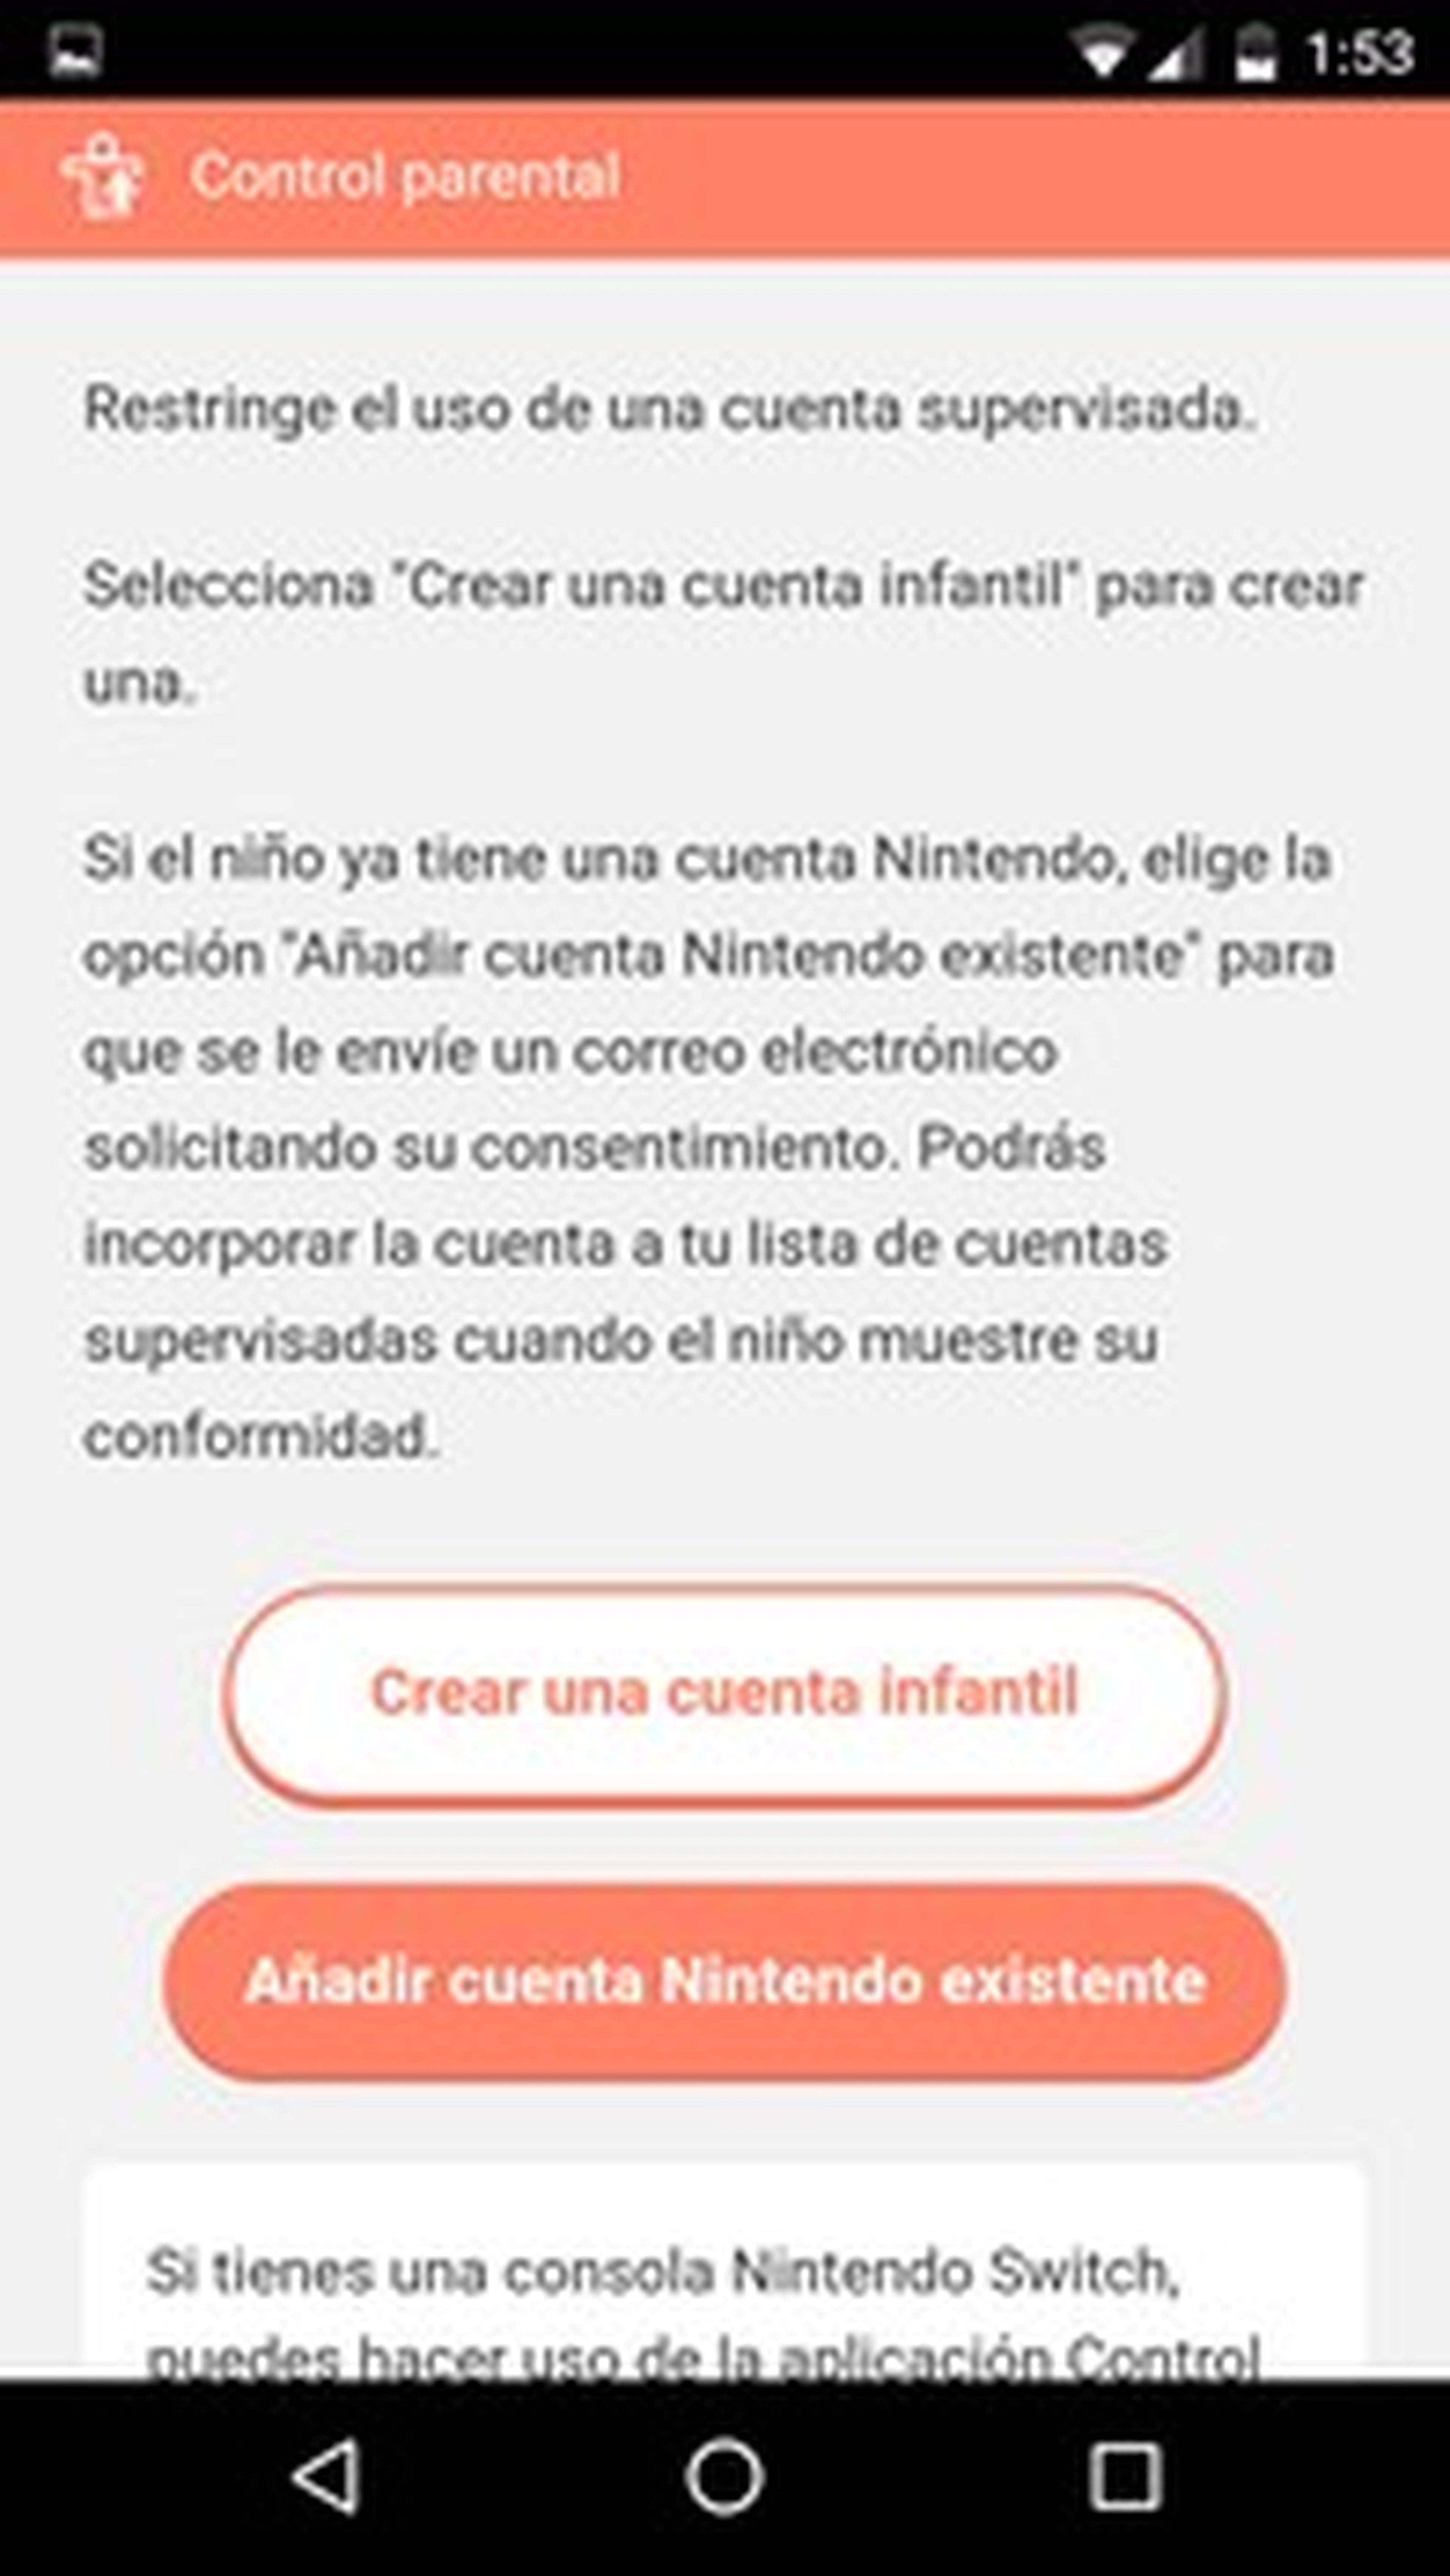 paridad Cenar pantalones Tutorial Nintendo Switch: Cómo configurar el control parental | Computer Hoy